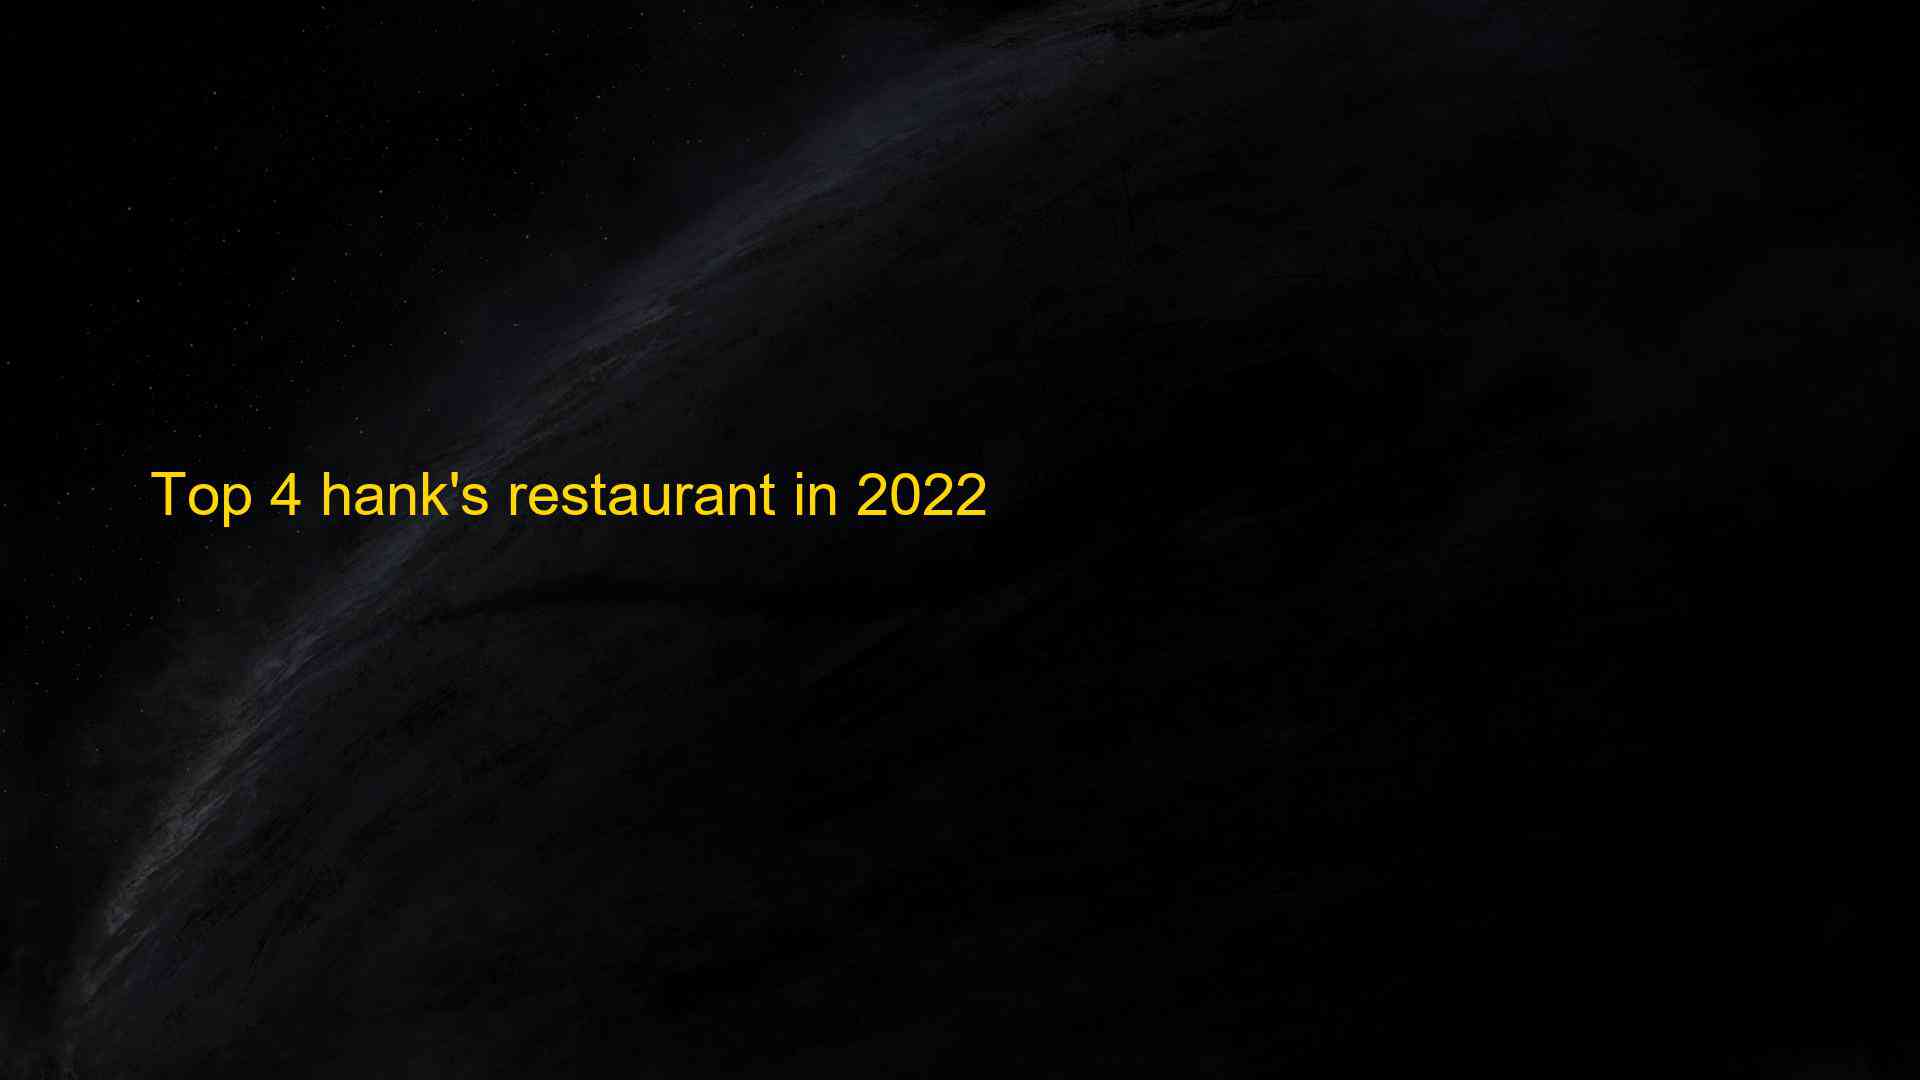 Top 4 hanks restaurant in 2022 1663543797